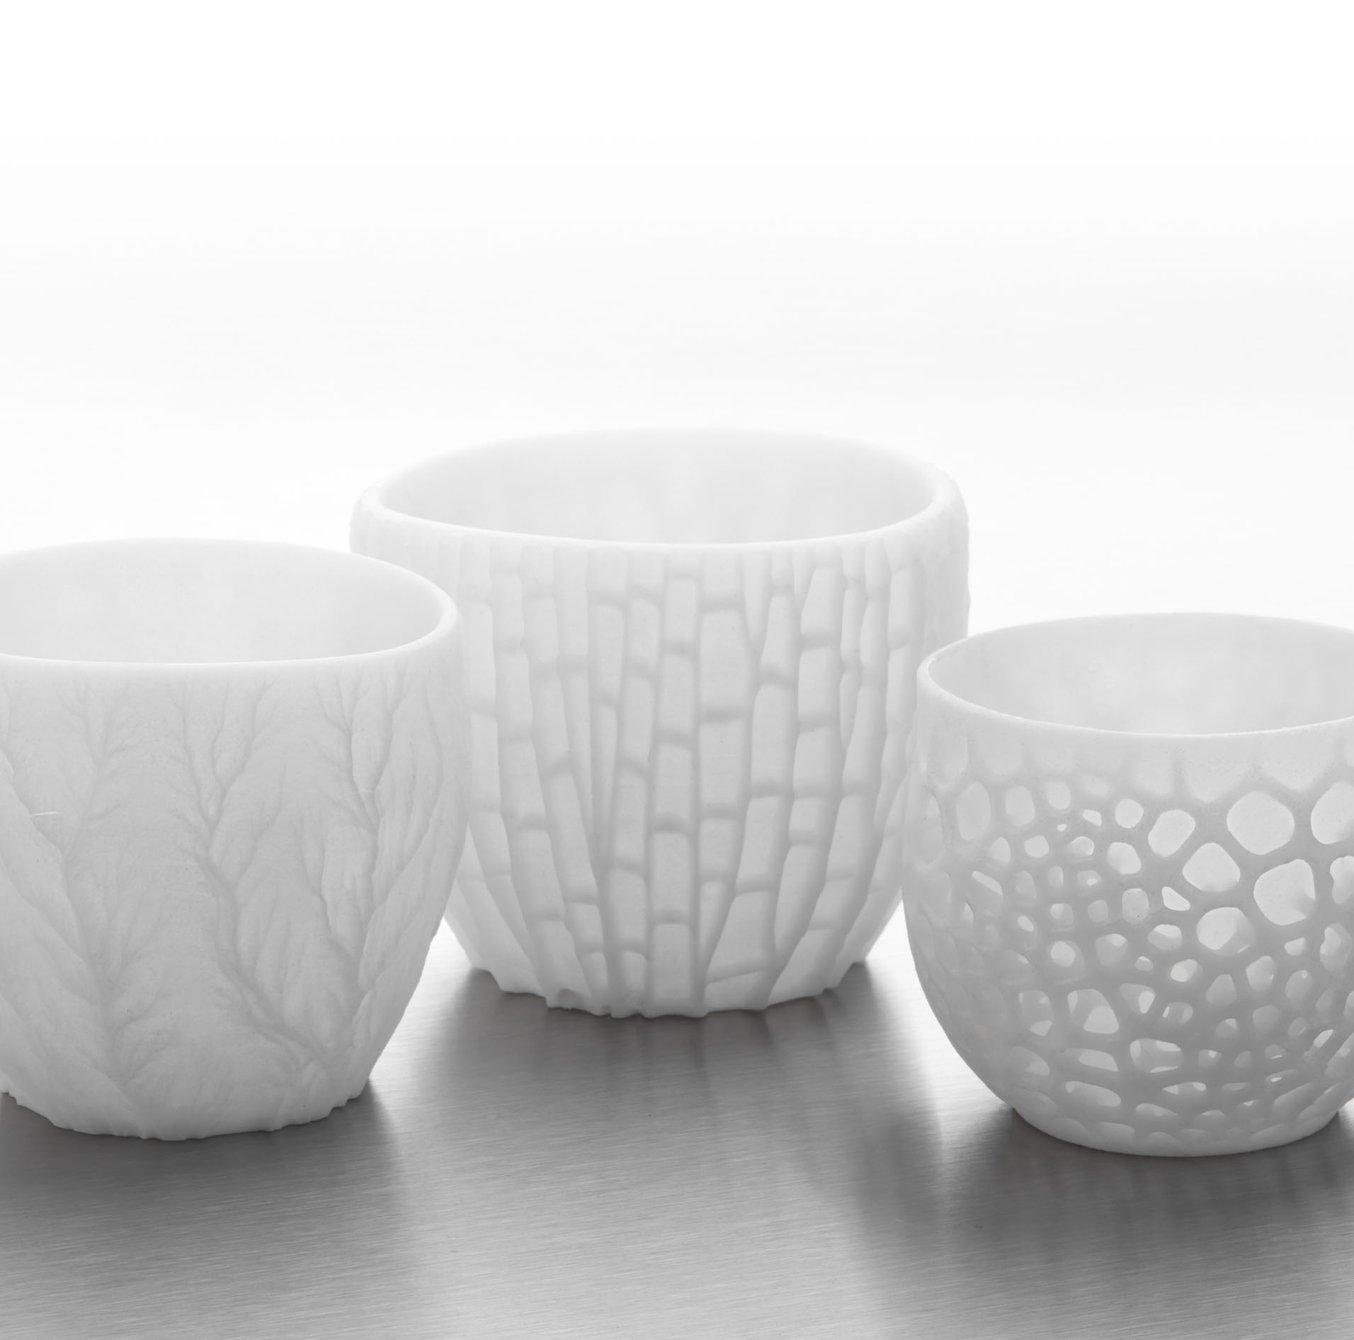 Ceramic Resin - 3D printed parts